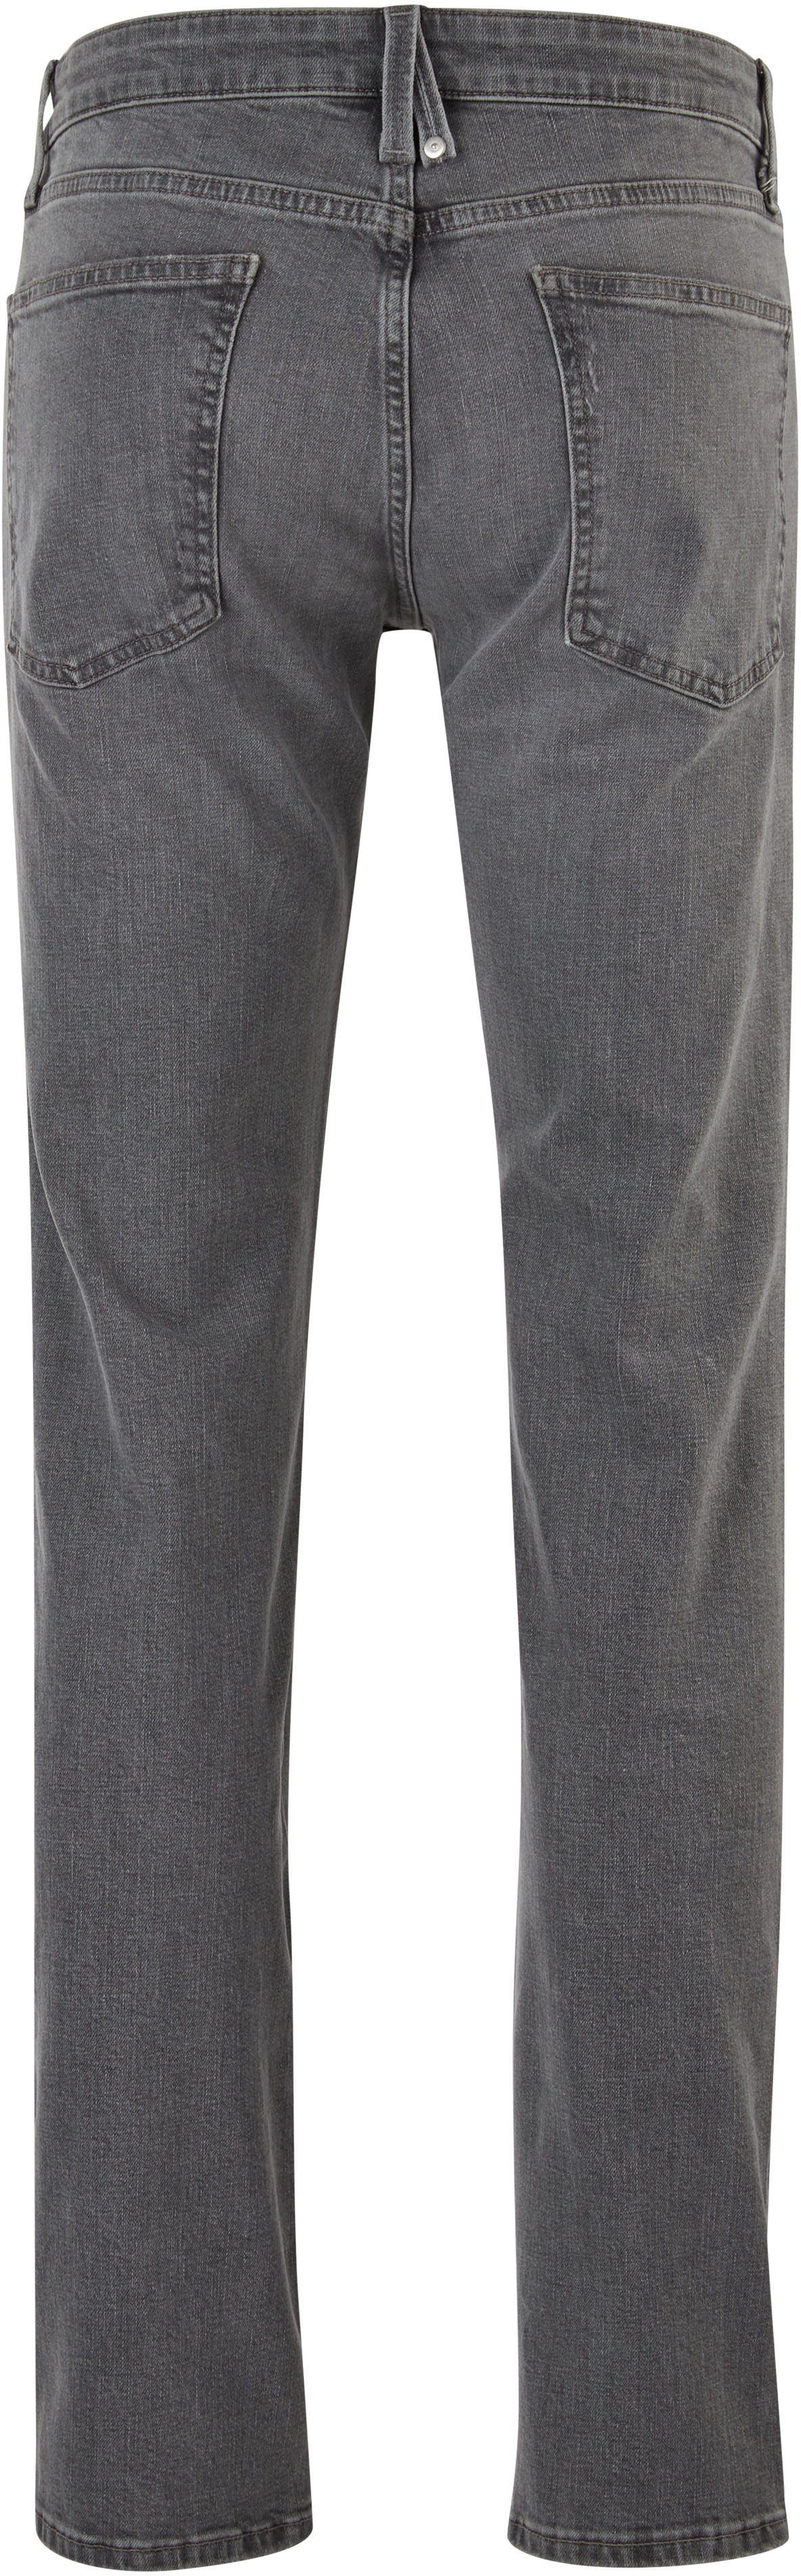 5-Pocket-Jeans s.Oliver Waschung mit authentischer stein-grau